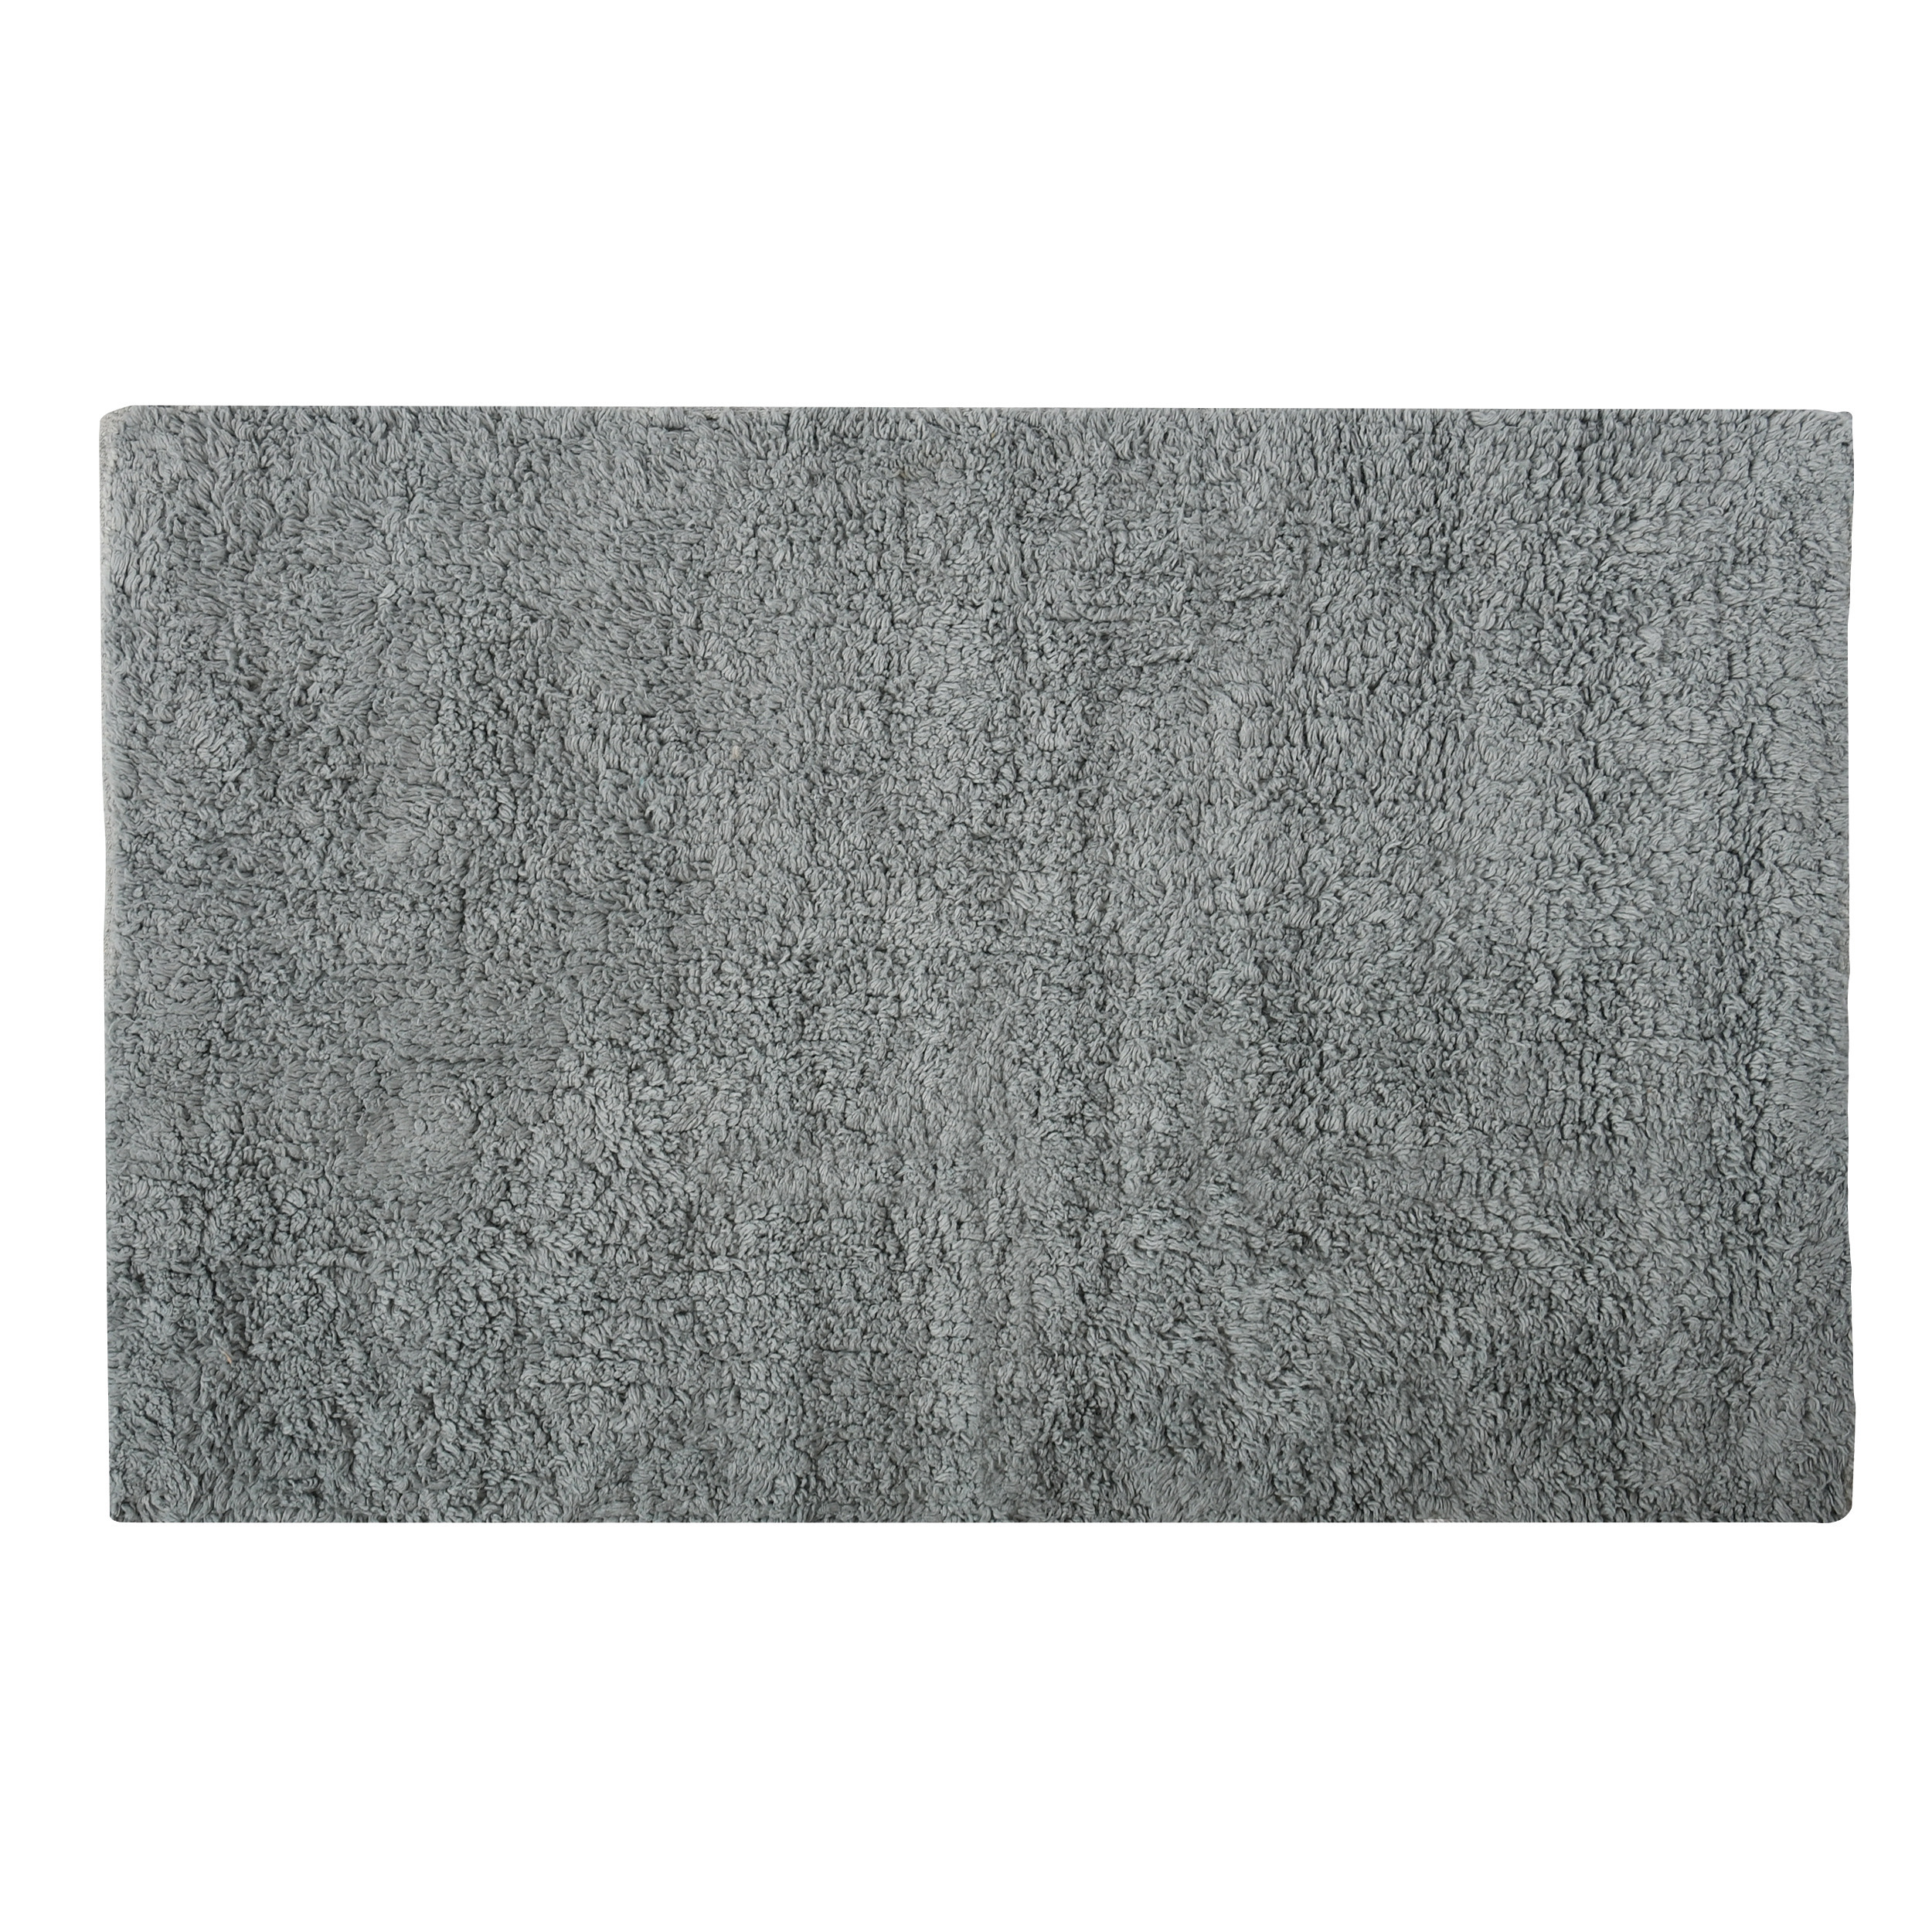 Badkamerkleedje-badmat tapijtje voor op de vloer lichtgrijs 40 x 60 cm